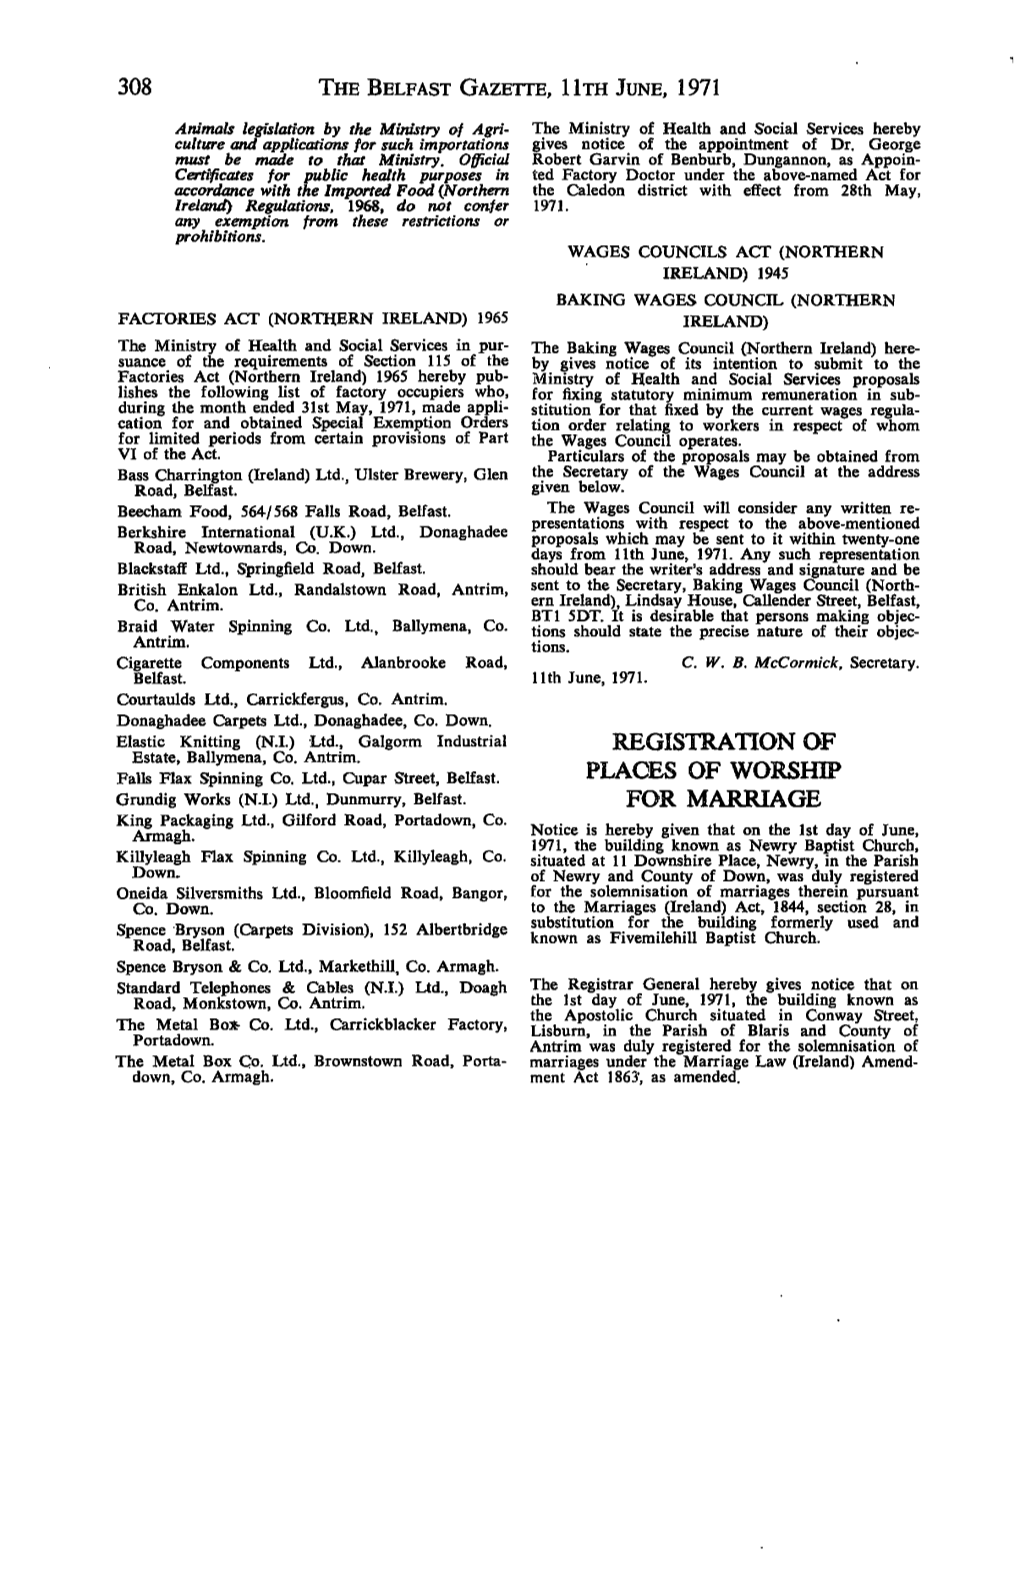 308 the Belfast Gazette, Hth June, 1971 Registration Of